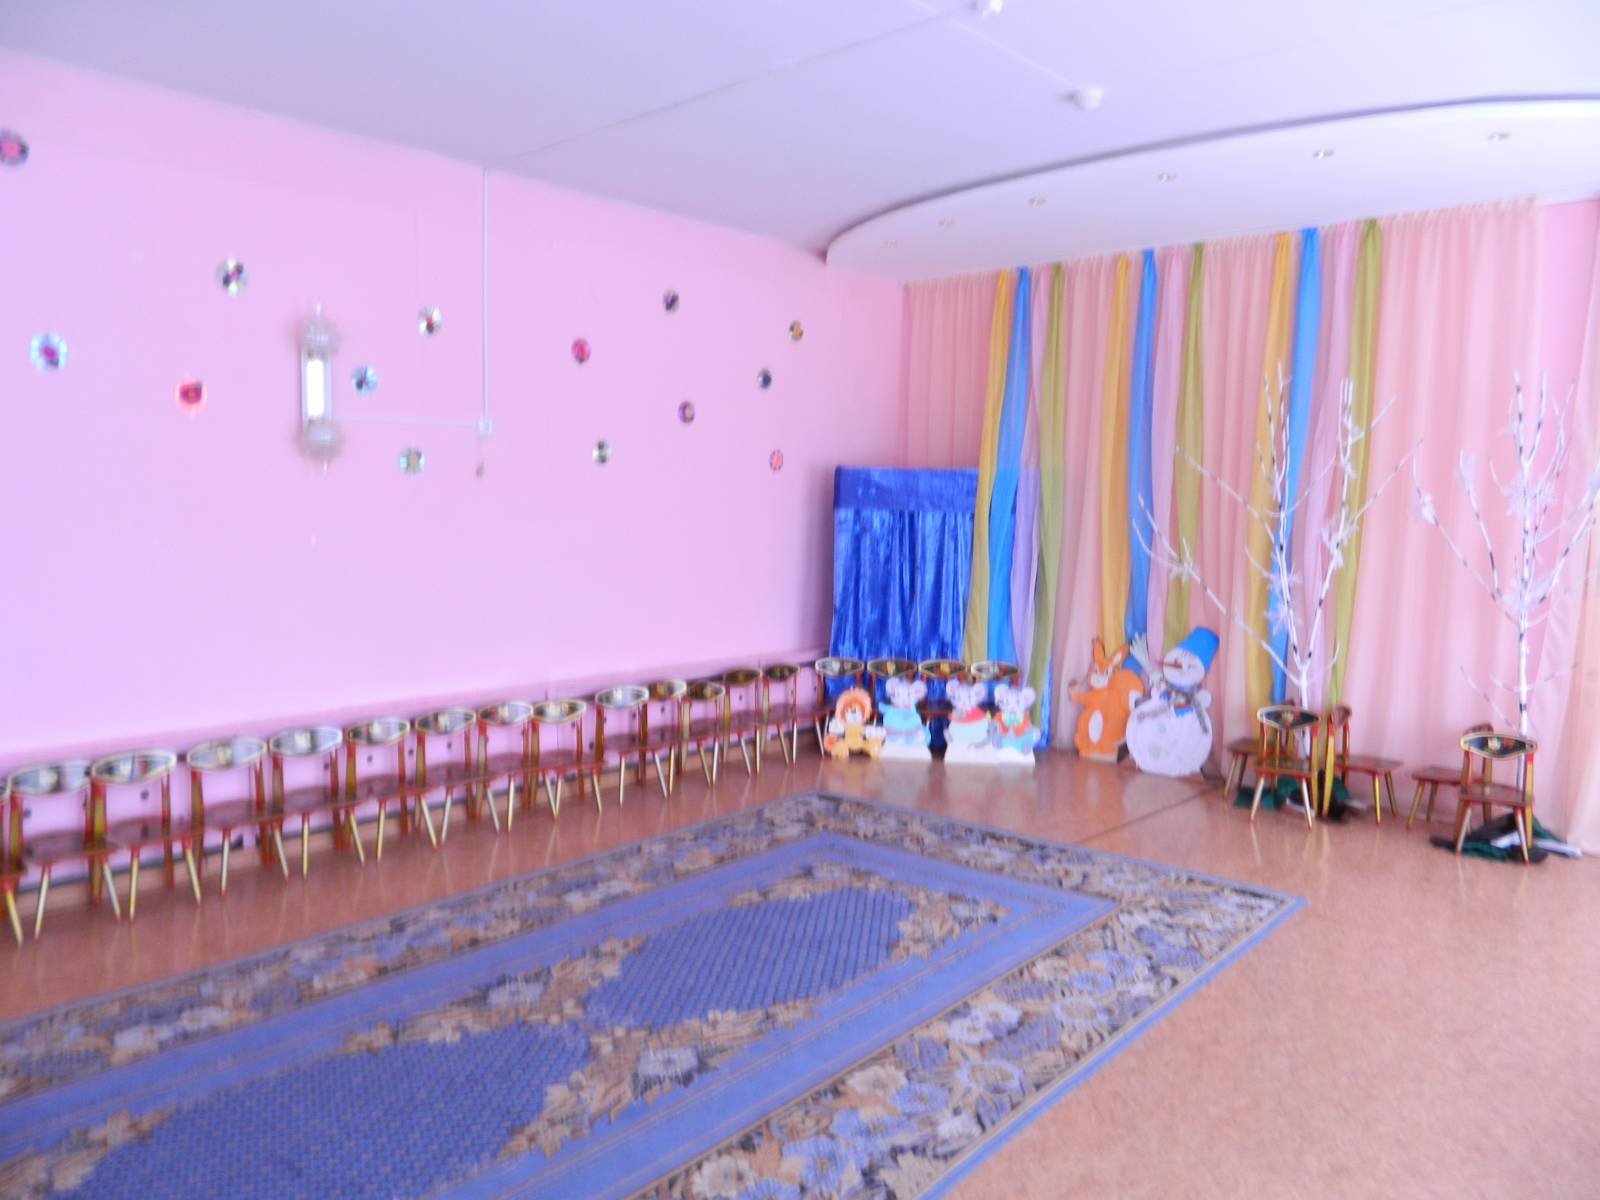 Фото в музыкальном зале в детском саду